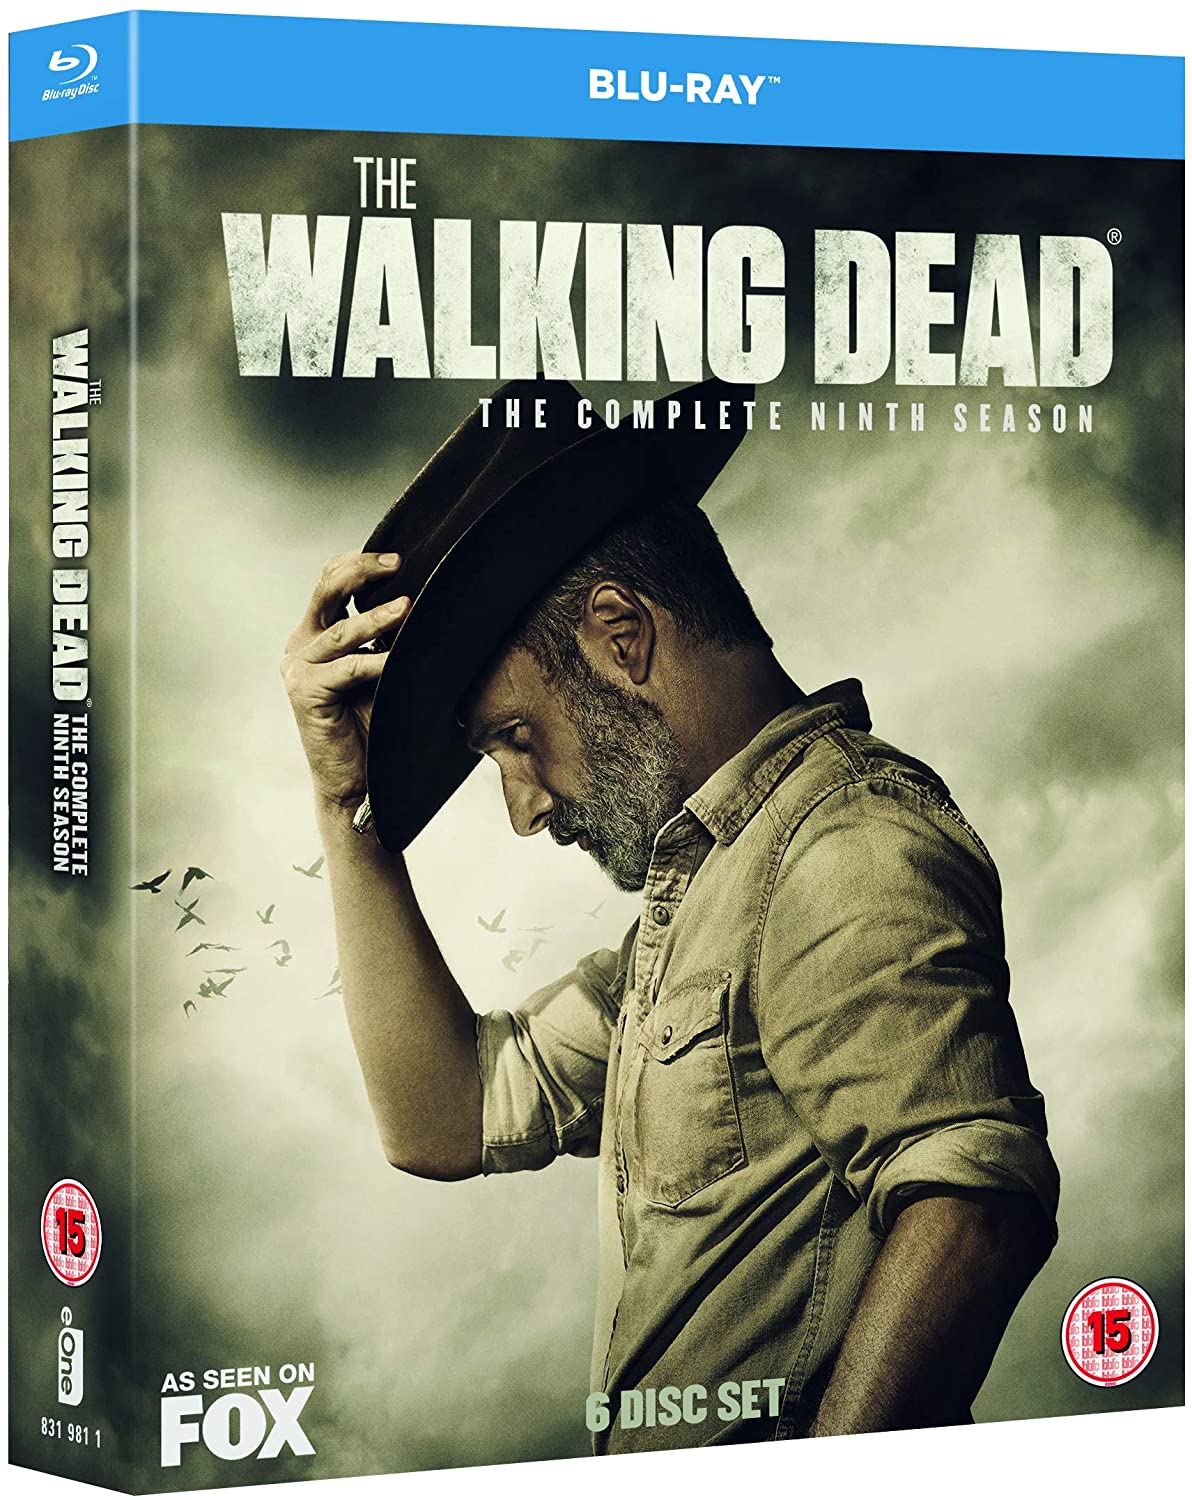 The Walking Dead: Season 9 (Blu-ray)